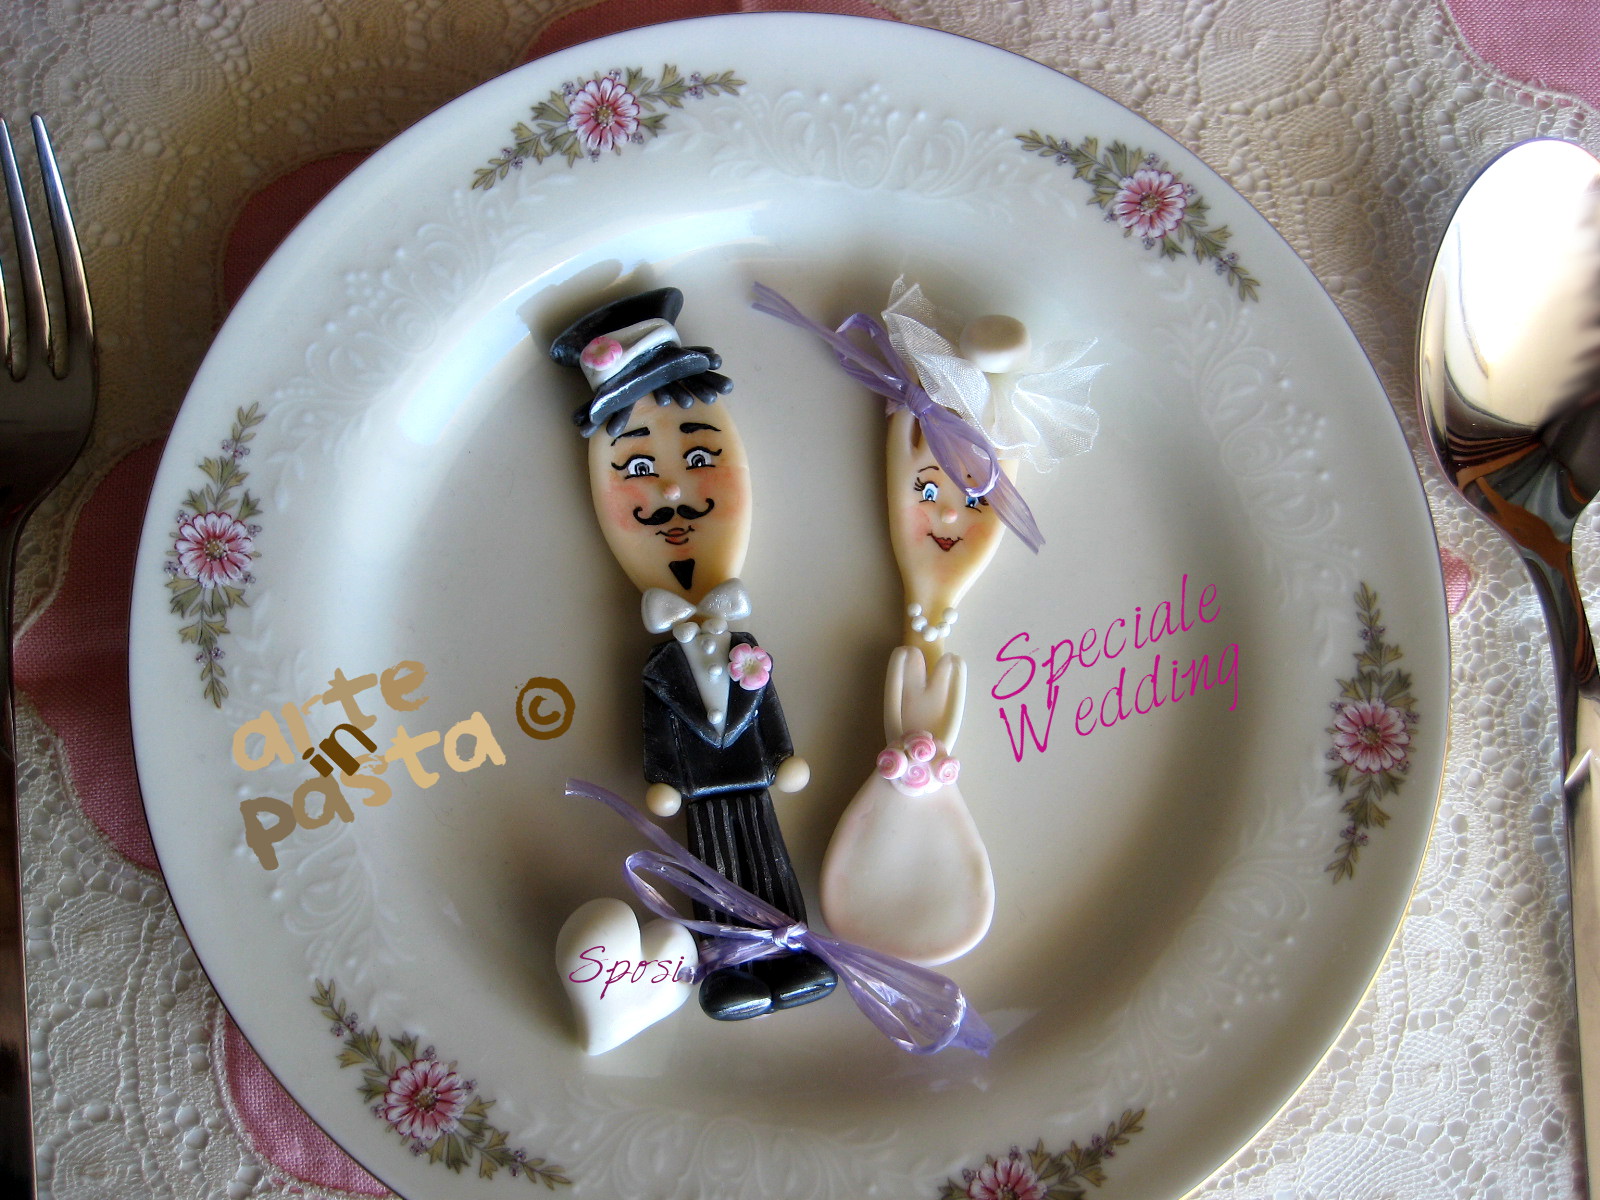 arteinpasta: Originali bomboniere/segnaposto per un matrimonio unico:  cucchiaio e forchetta nelle vesti di due simpaticissimi sposi!